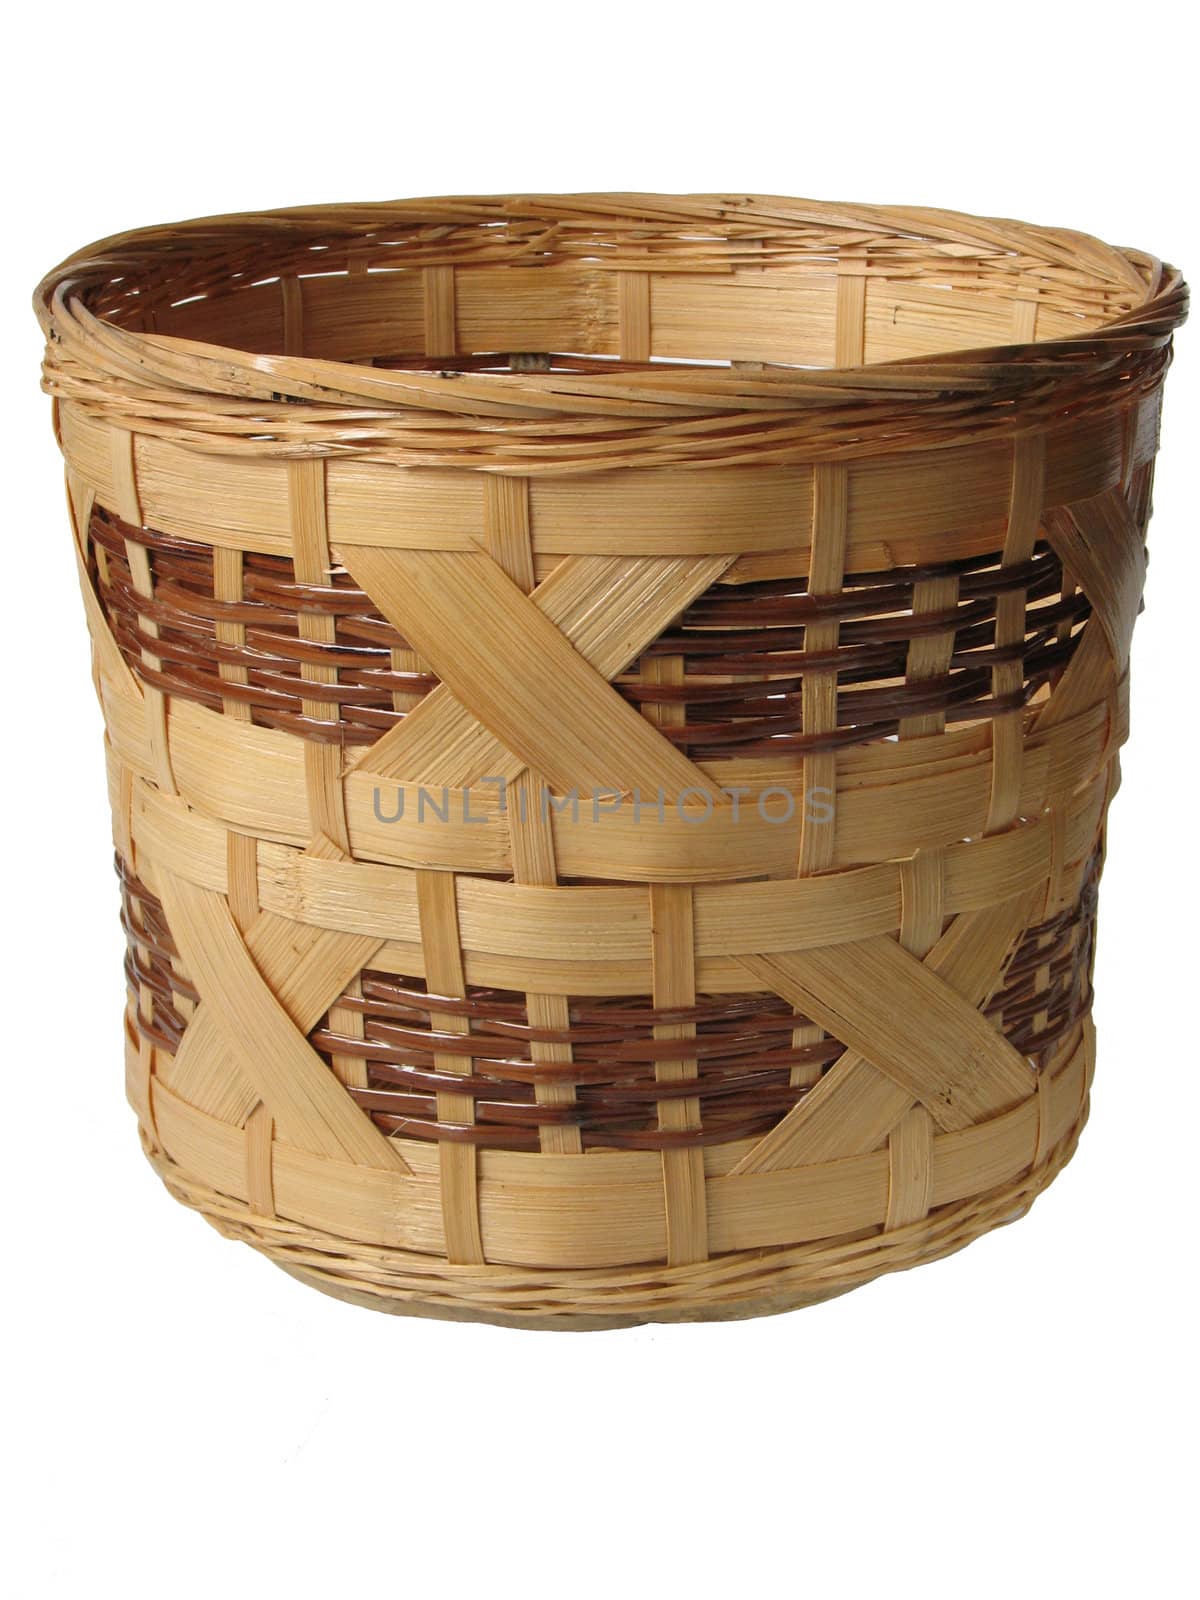 Decorative basket on white background